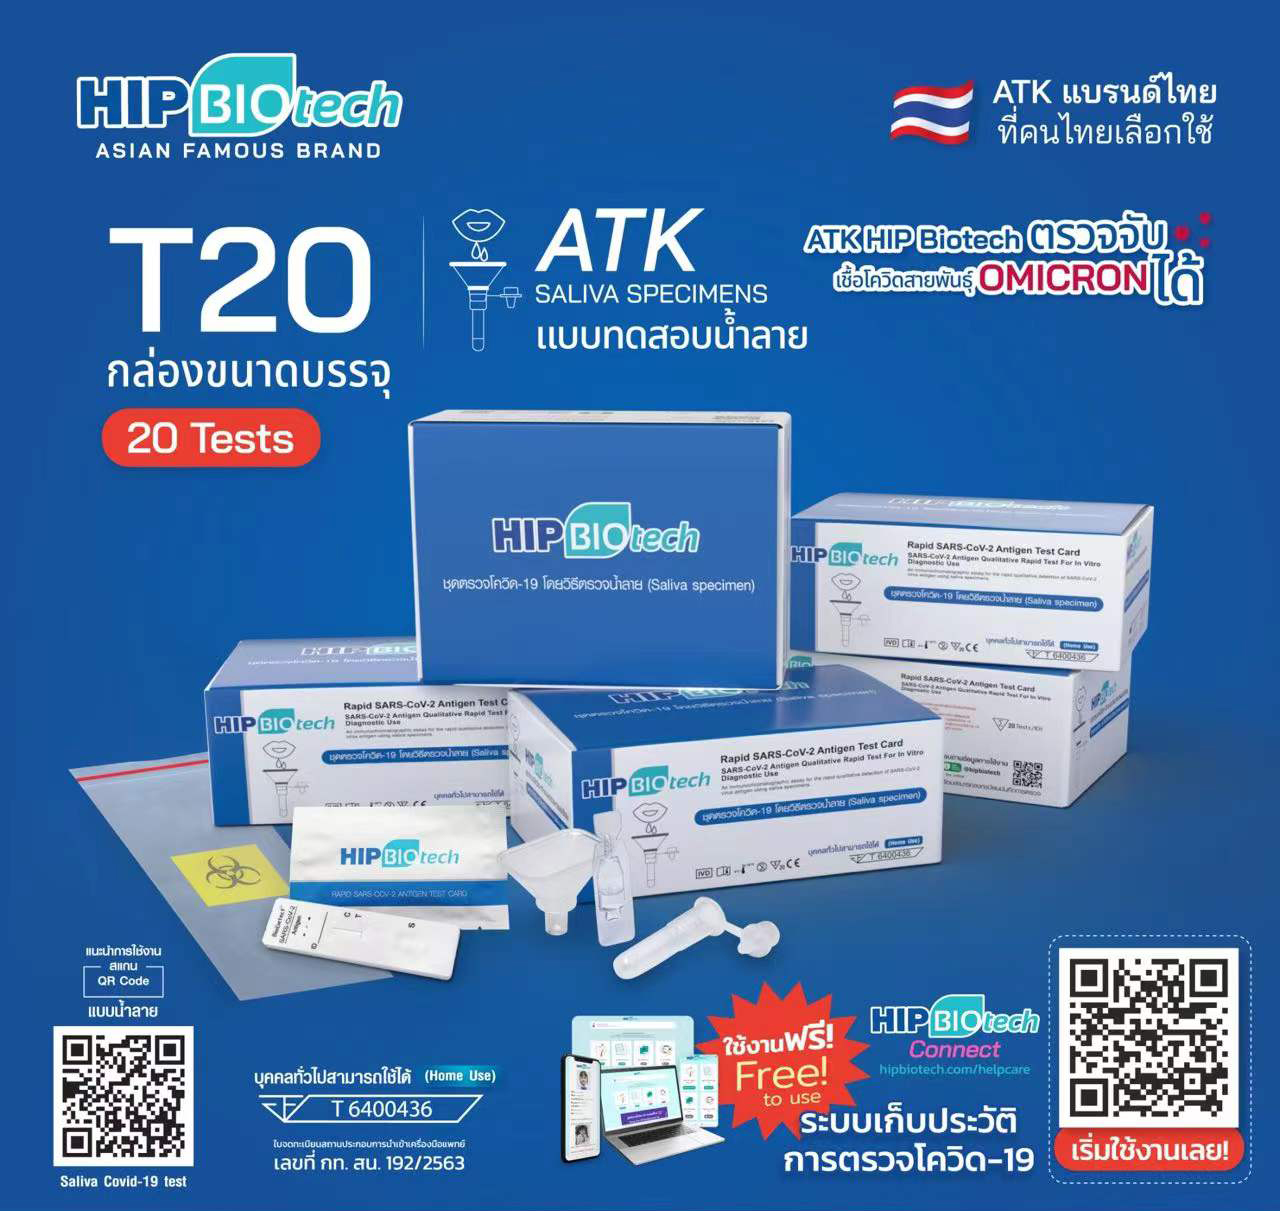 บริษัทรับตัวแทนจำหน่าย ชุดตรวจ ATK  hip biotech ชุดตรวจโควิดทางน้ำลาย T20 T01 ชุดตรวจโควิด-19 Sars-Cov-2 ชุดตรวจแอนติเจนเทส สั่งจำนวนเยอะได้ราคาส่ง